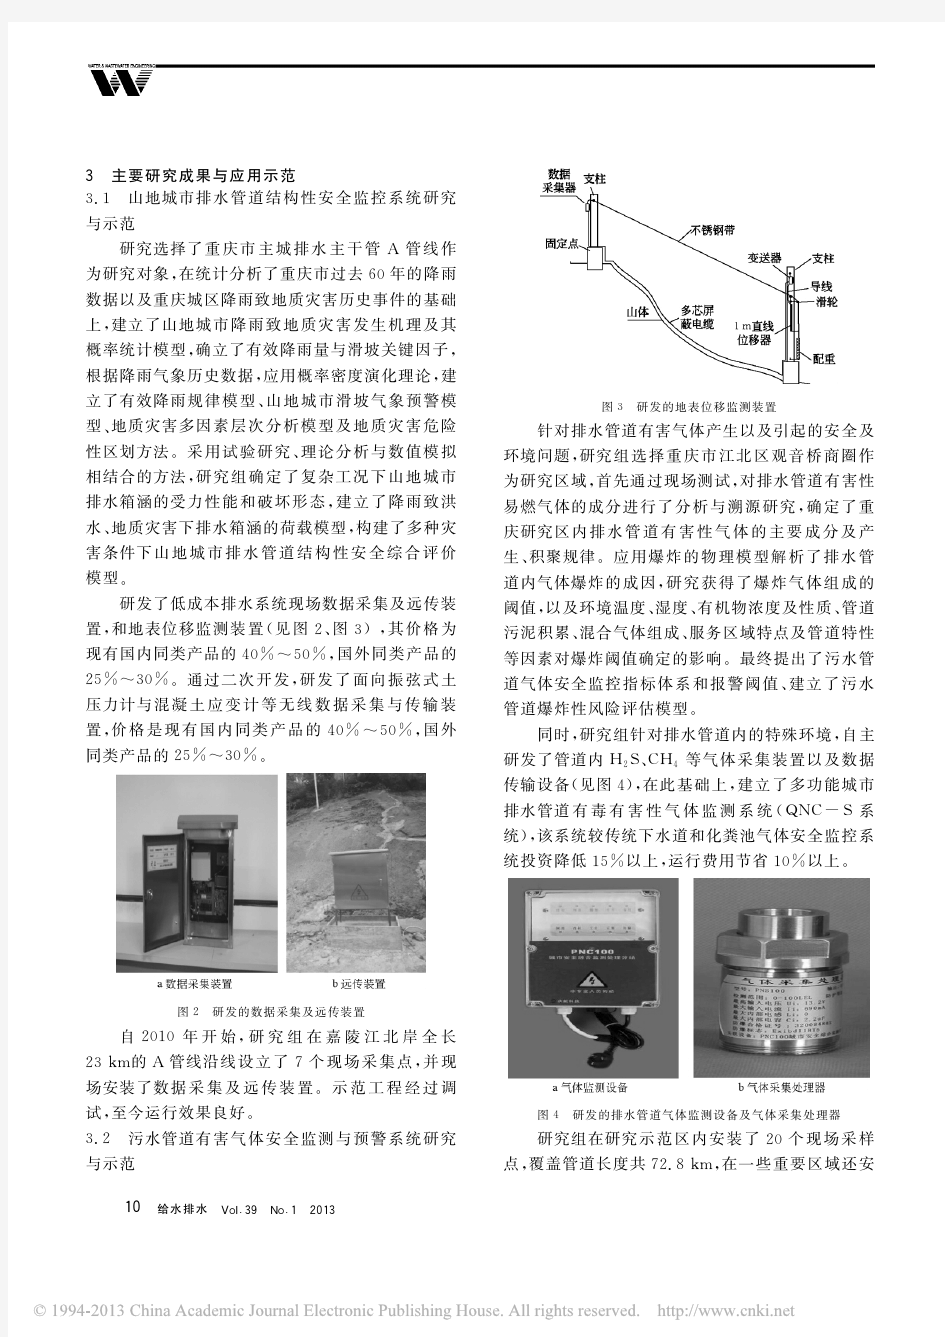 重庆主城排水系统安全与城市面源污染控制技术研究与综合示范